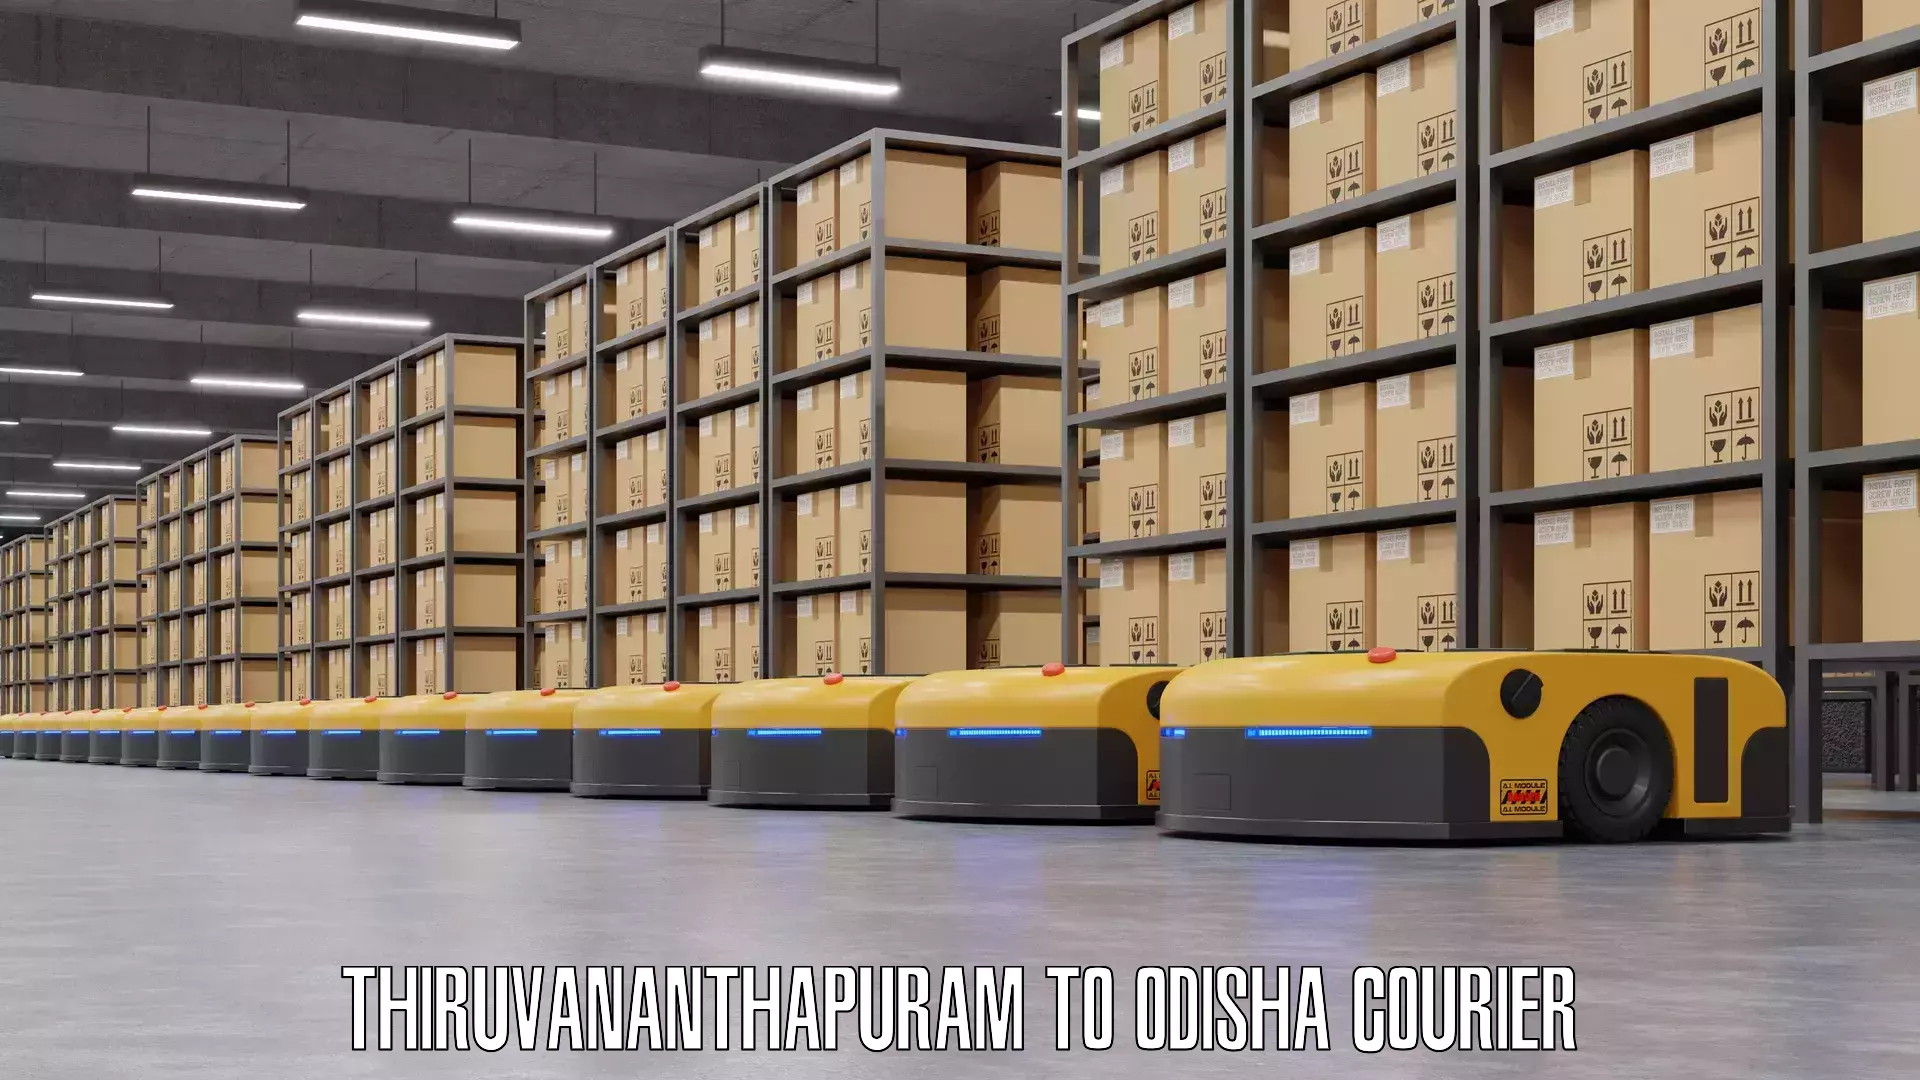 Luggage courier planning Thiruvananthapuram to Odisha